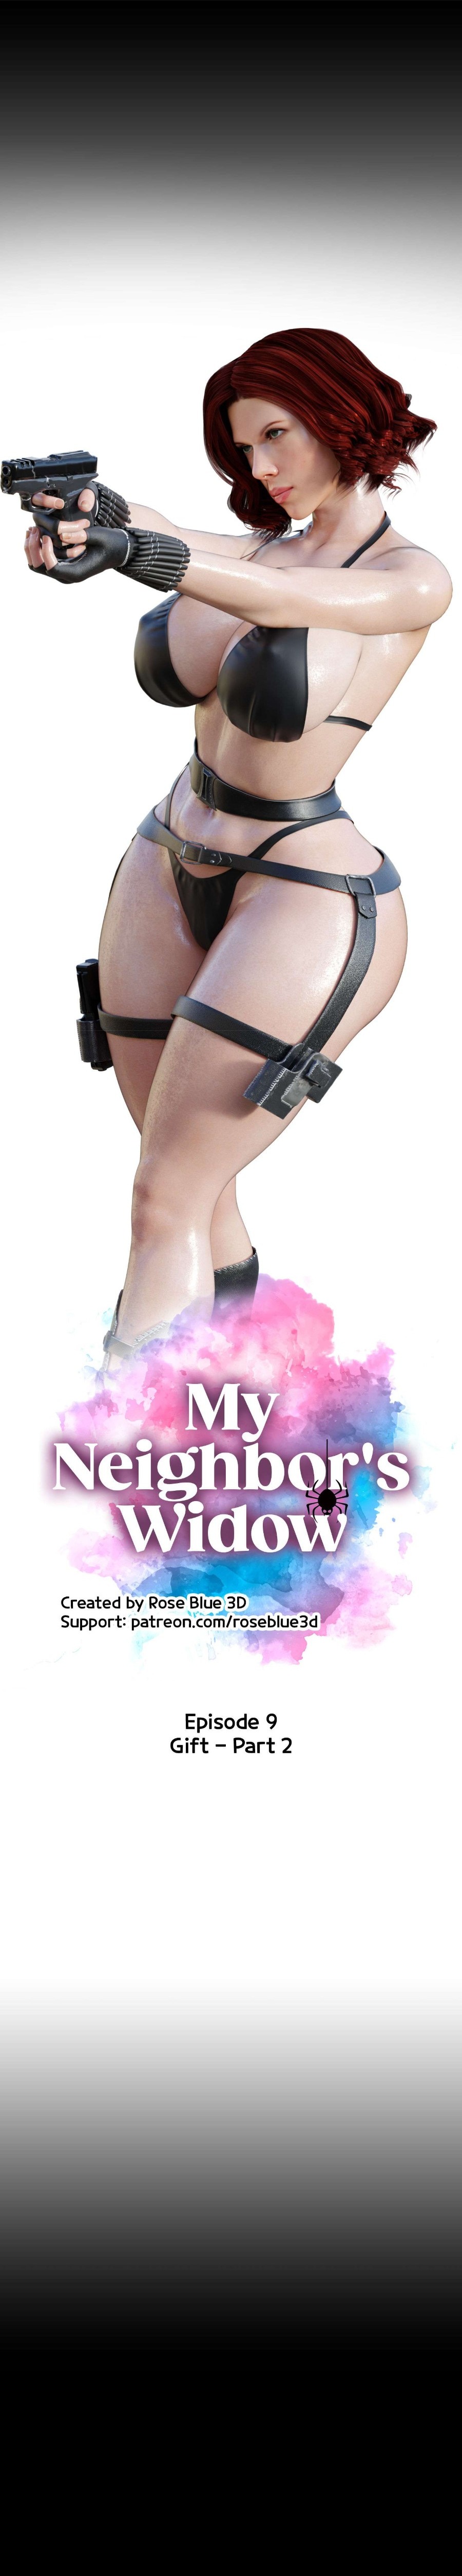 My Neighbor